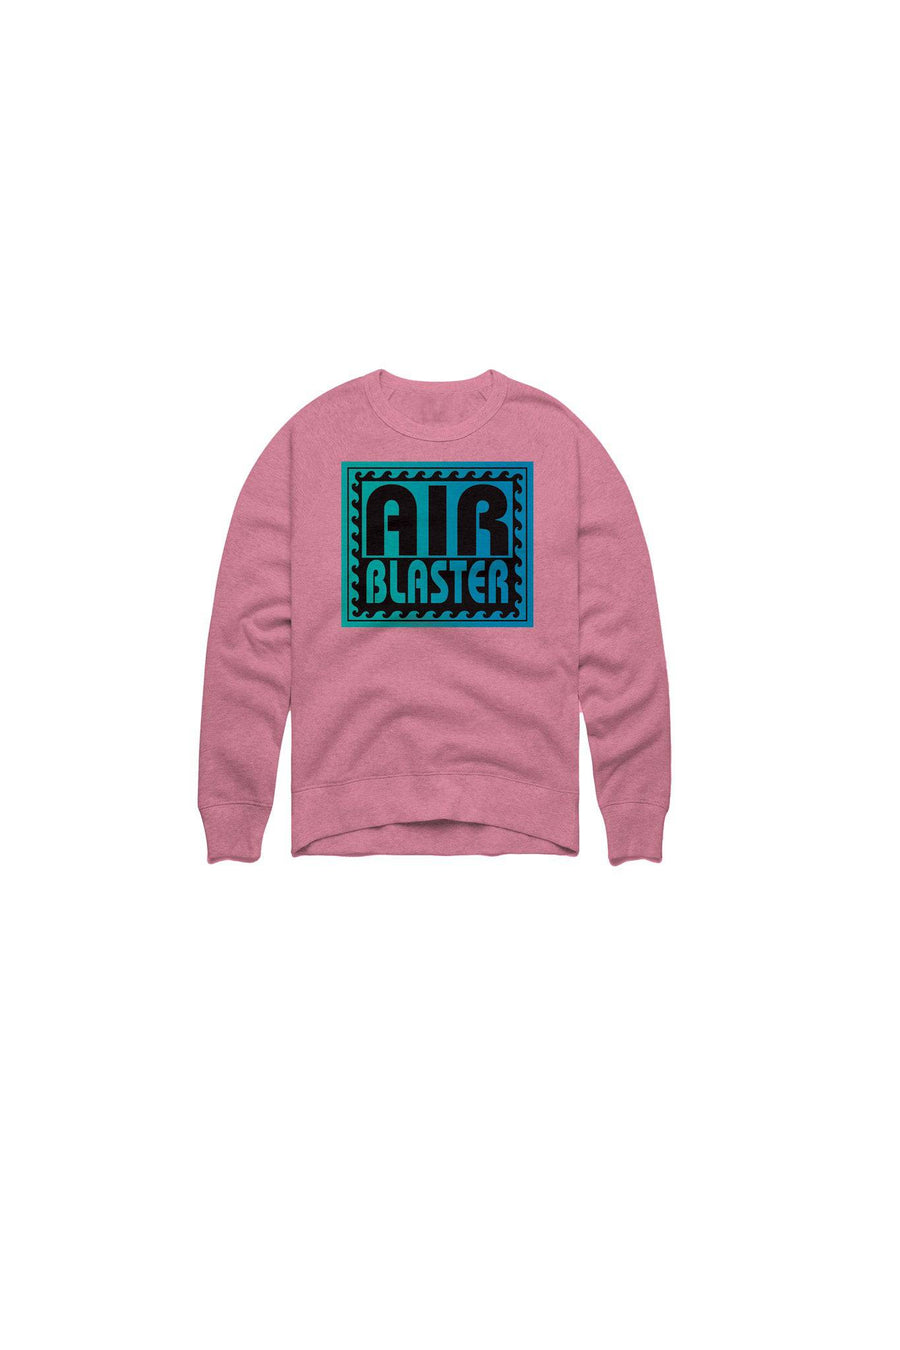 Airblaster Surf Stack Crew Sweatshirt in Pigment Pink 2023